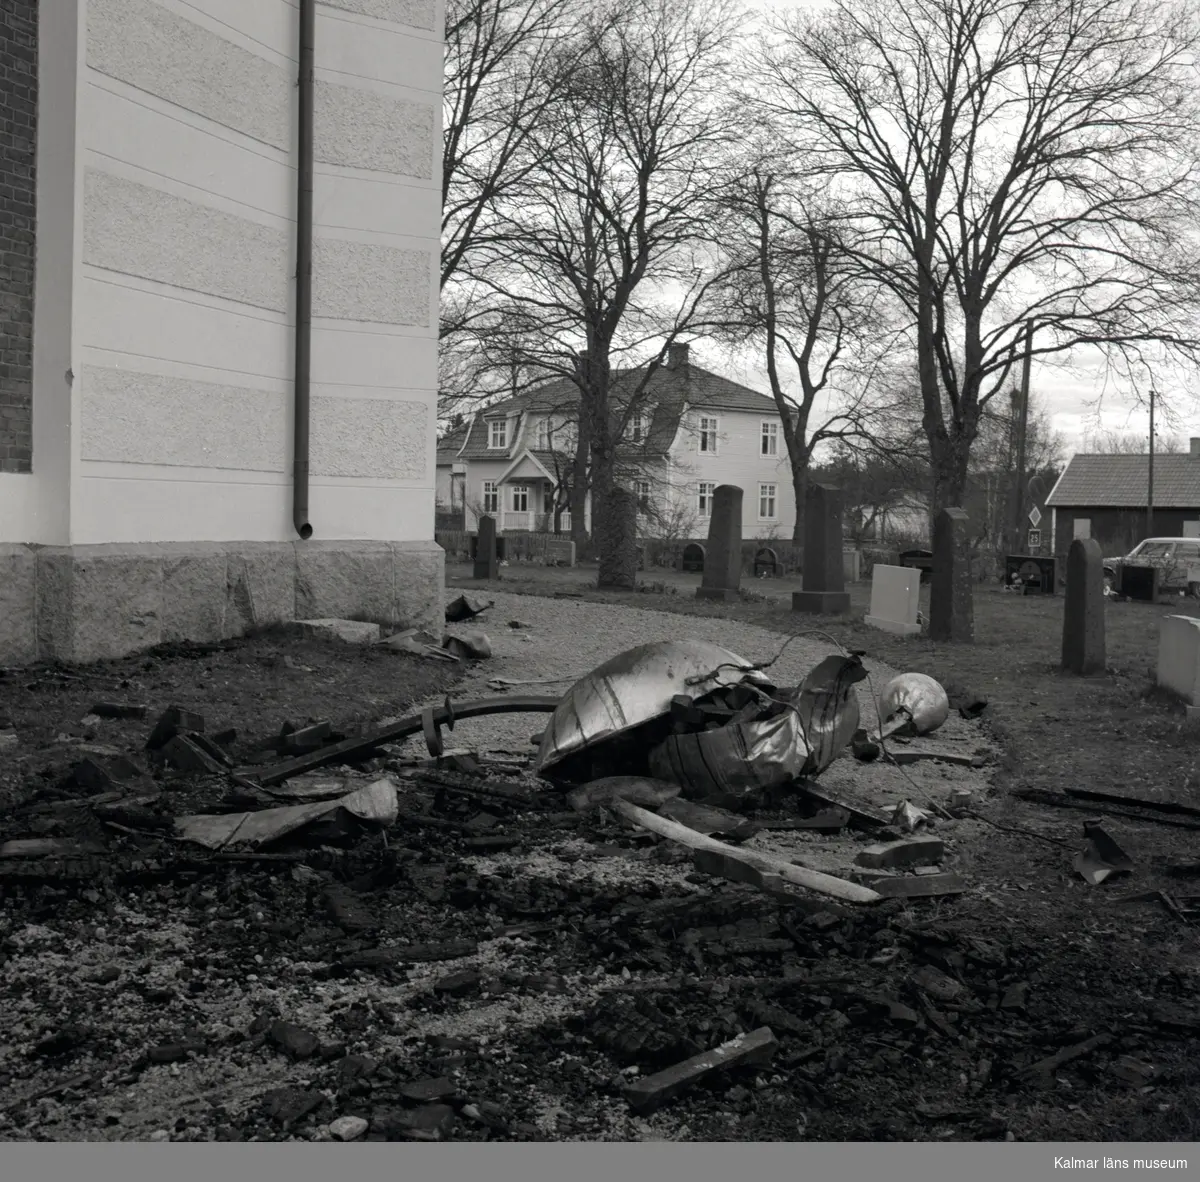 Örsjö kyrka är en centralkyrka.  Vid en brand påsken 1974 lämnades endast murväggarna kvar. Kyrkan återuppbyggdes på rekordtid, och med ny interiör ritad av arkitekt Jerk Alton återinvigdes den i september 1976.